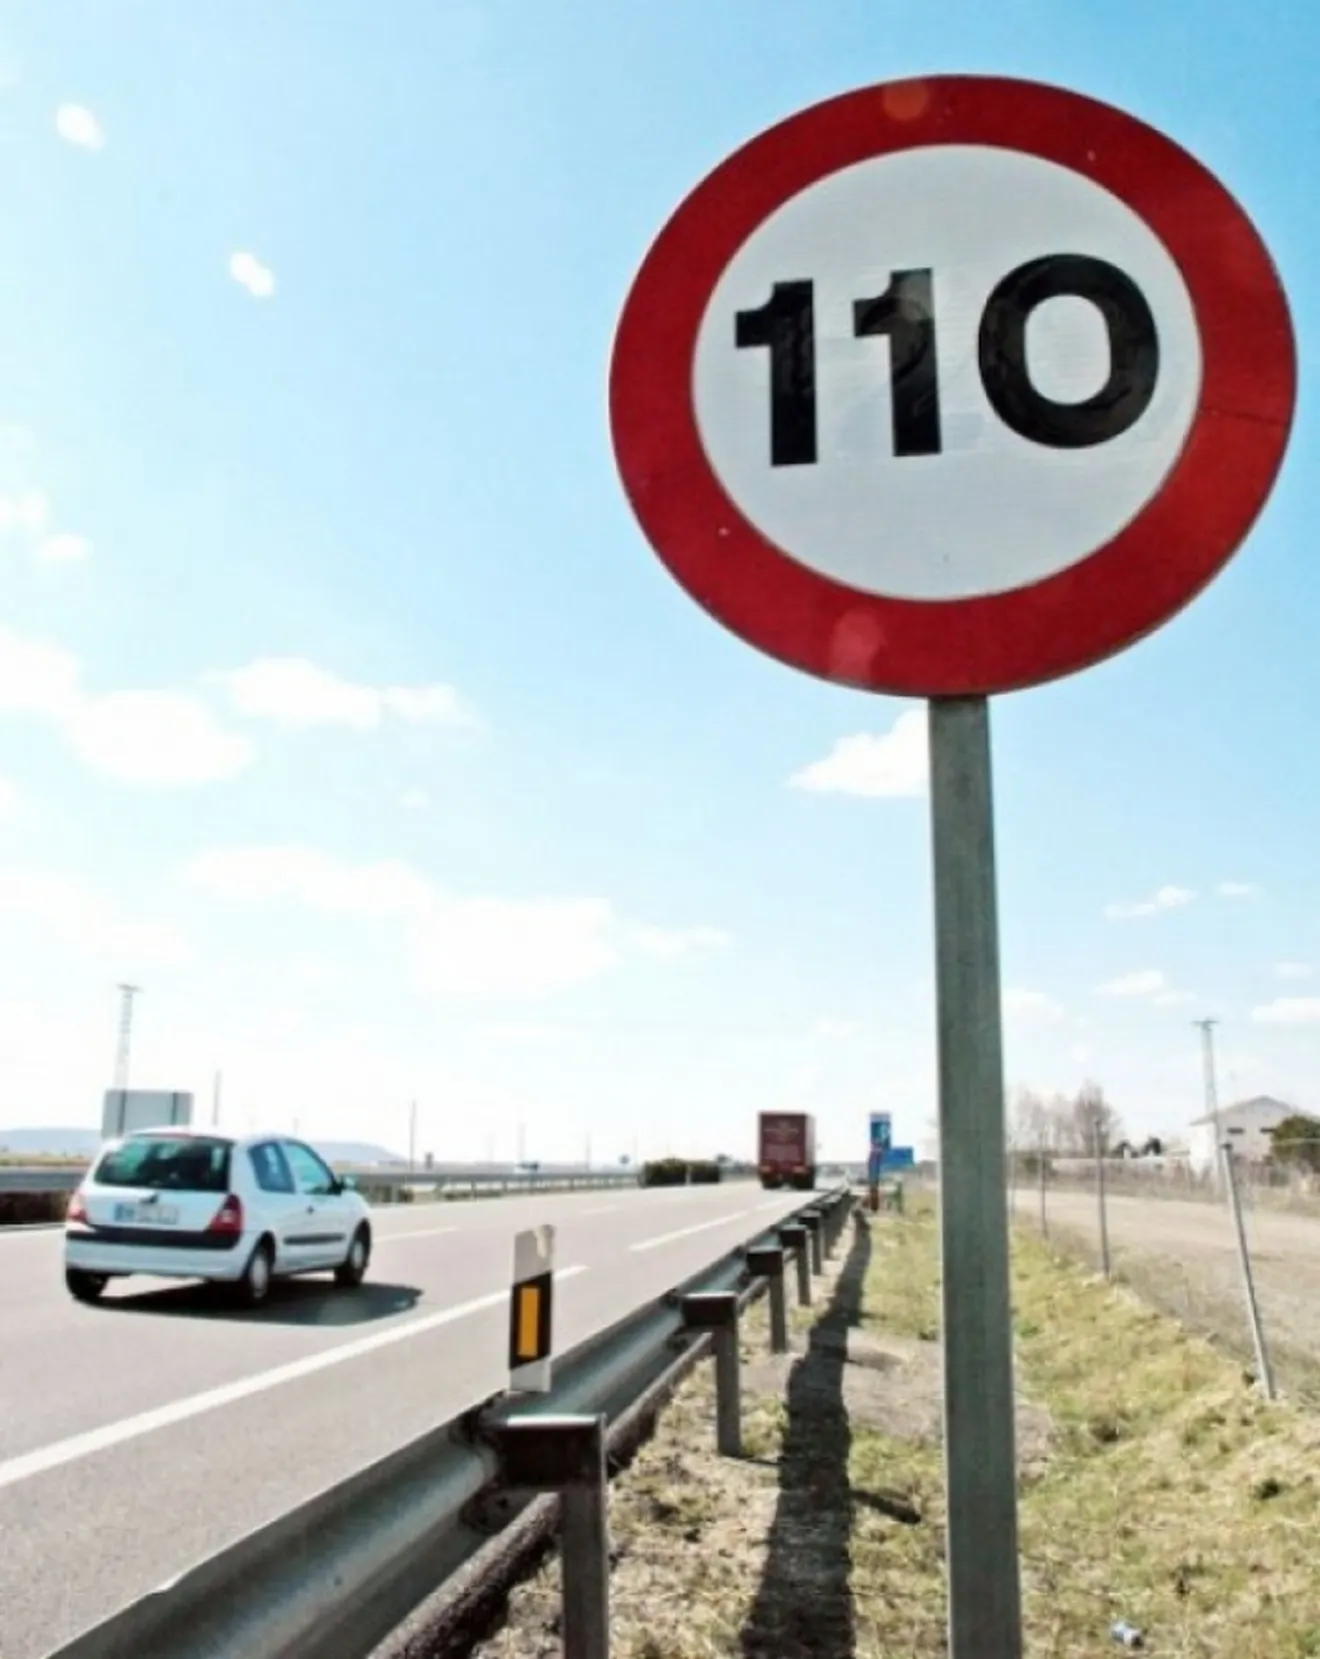 El Gobierno dice que 'quiere quitar' el límite de 110